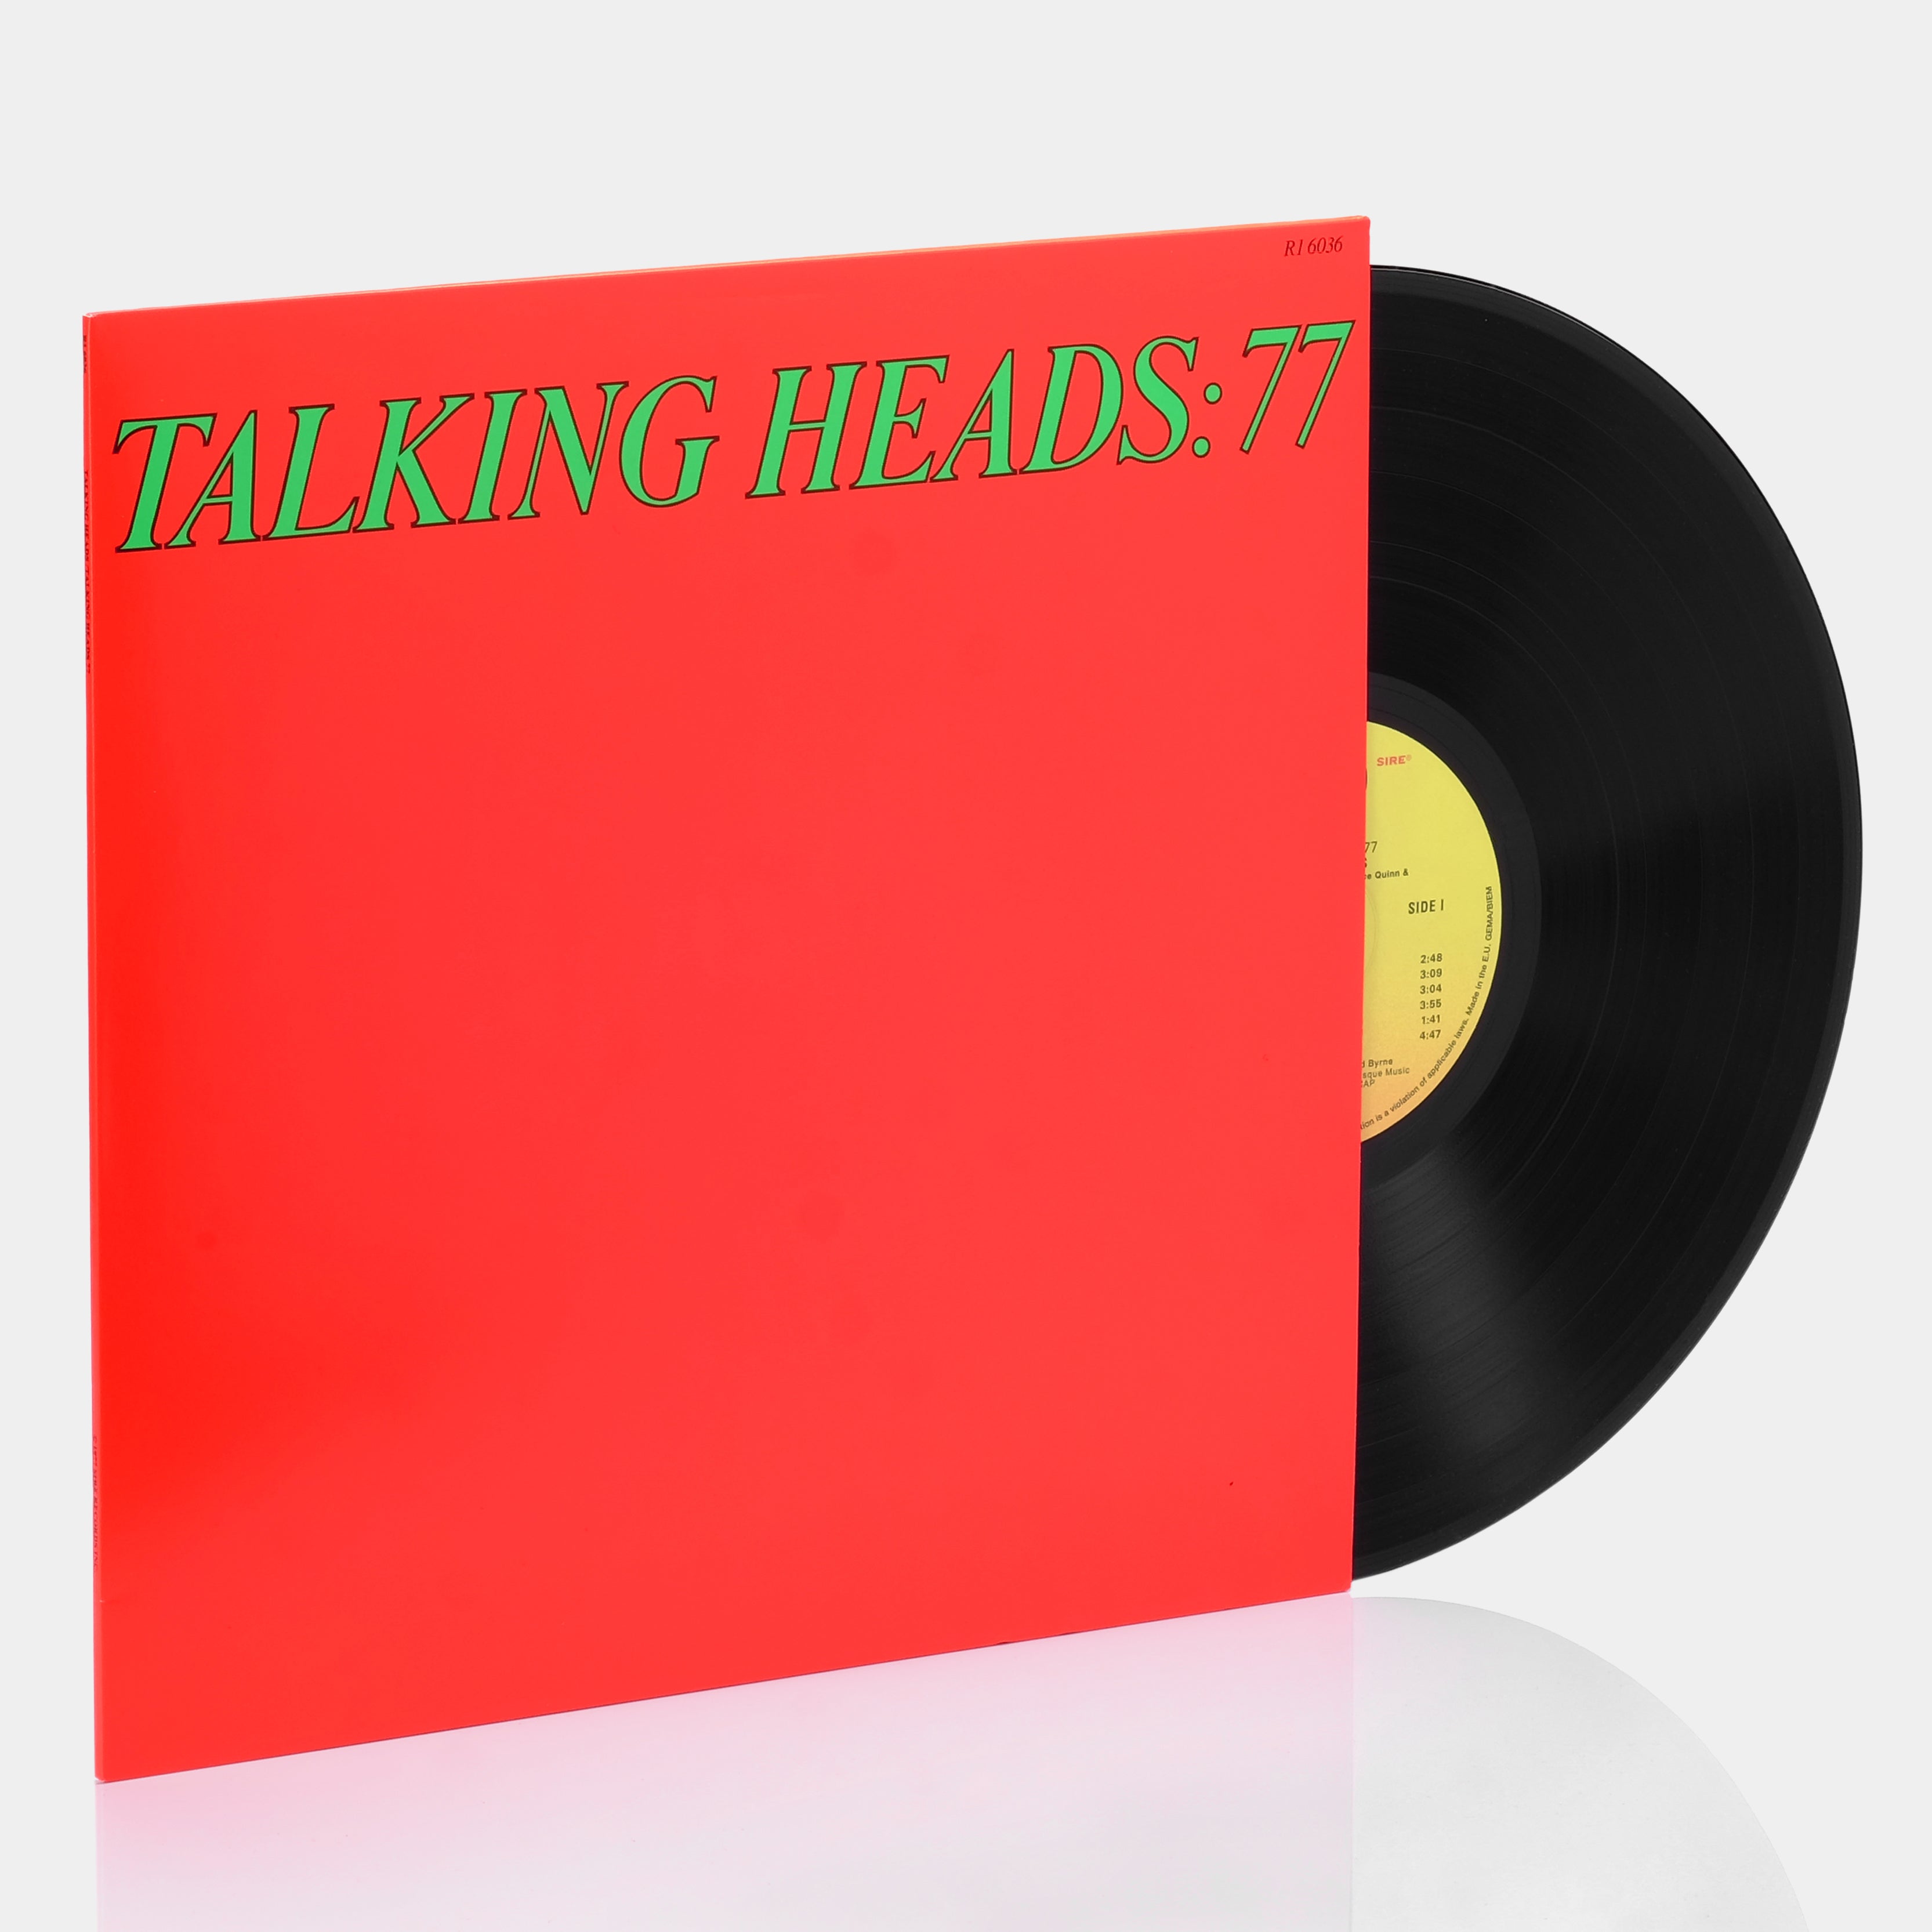 Talking Heads - Talking Heads: 77 LP Vinyl Record